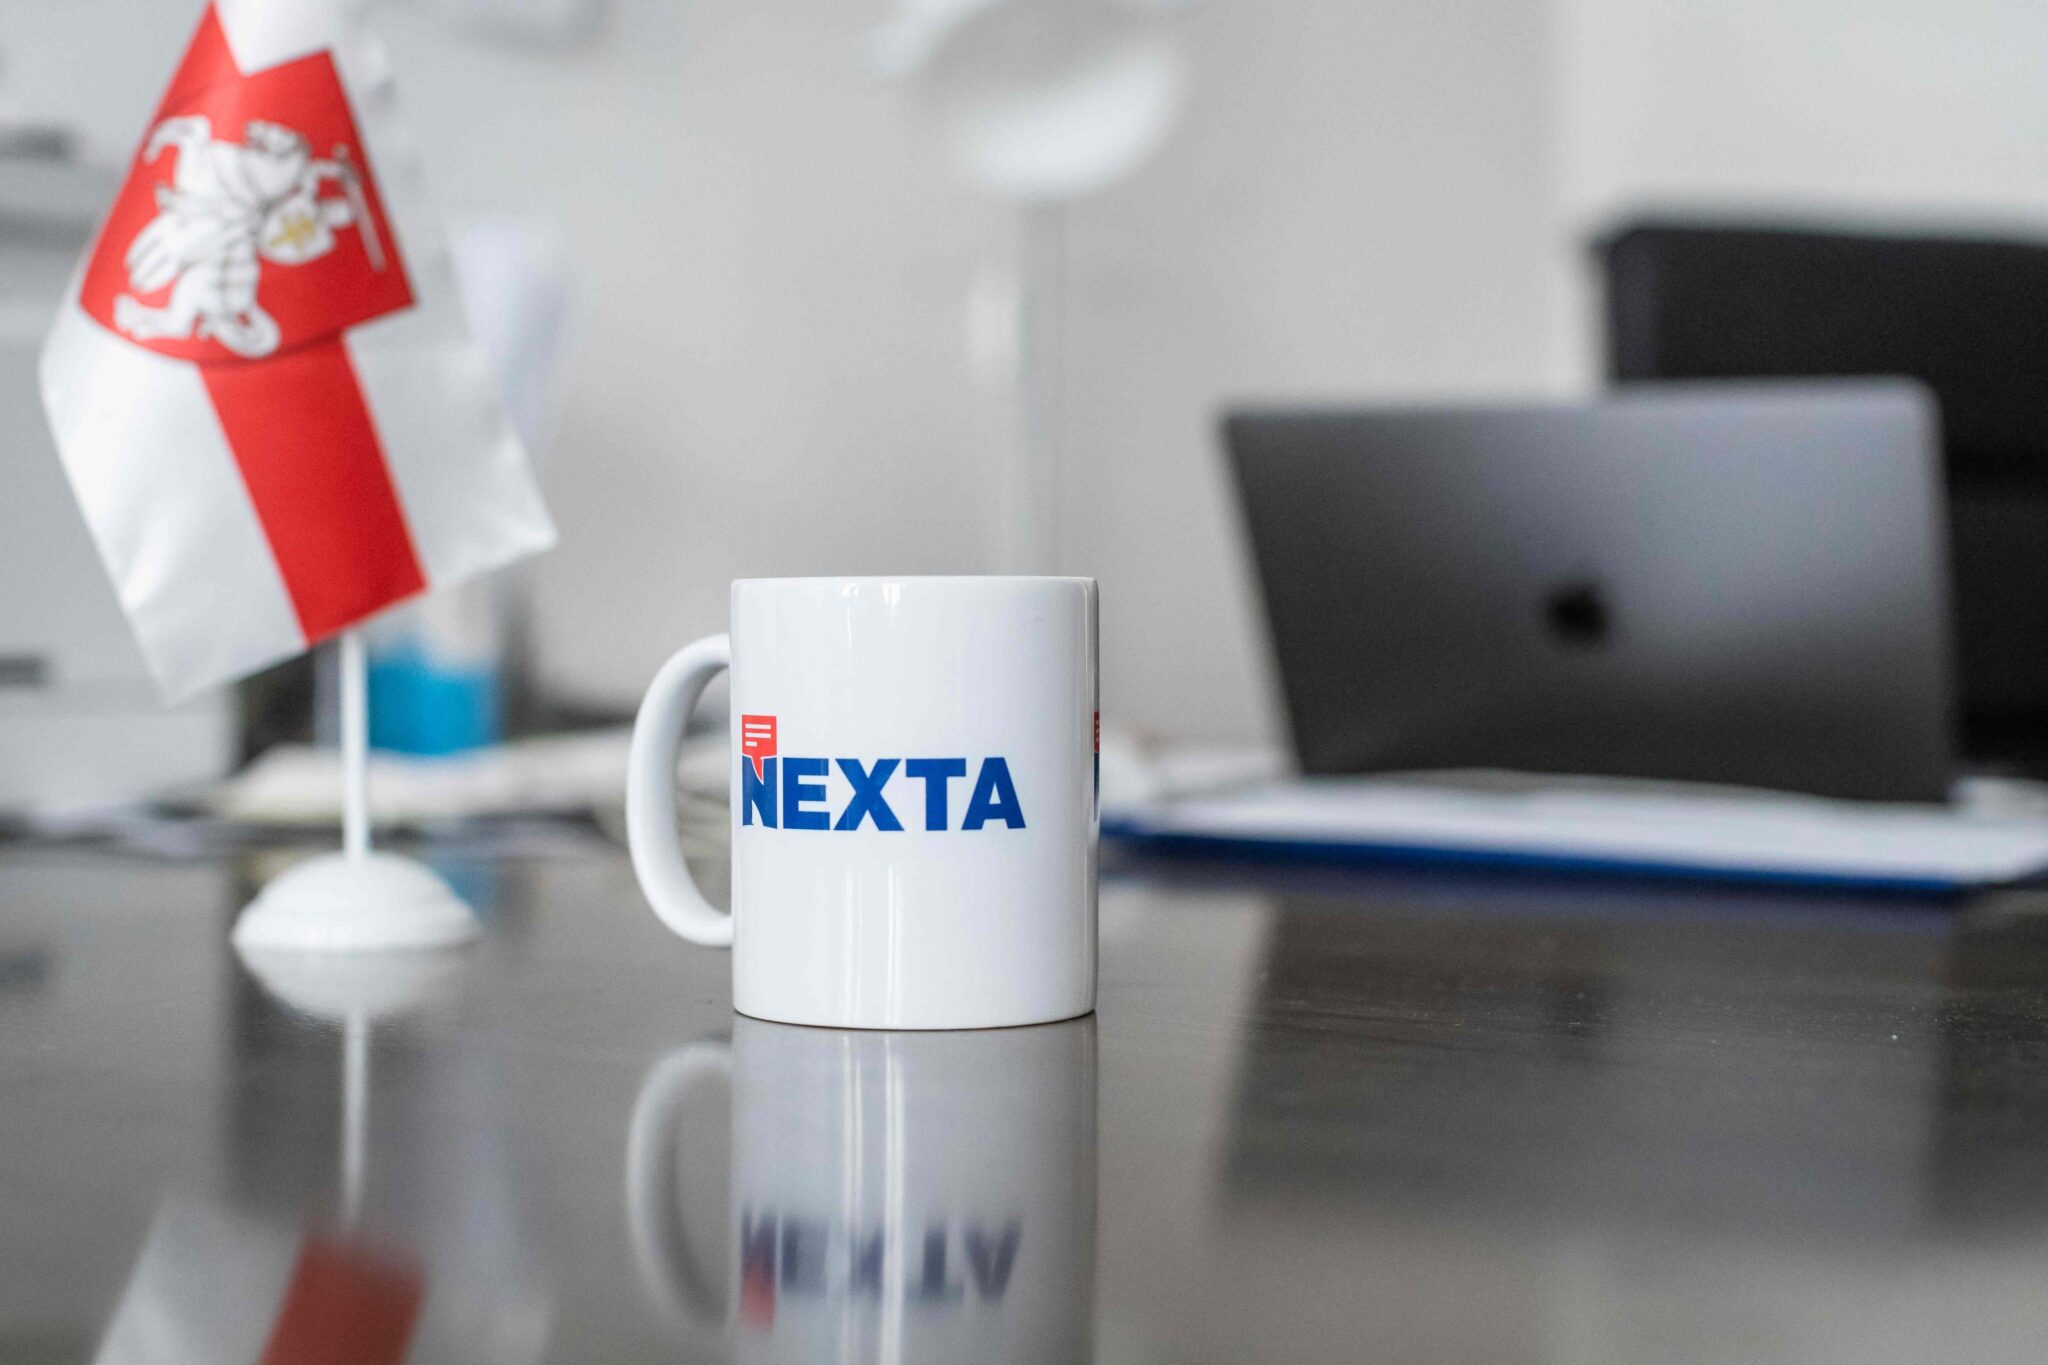 Кружка с логотипом Nexta. Фото WOJTEK RADWANSKI / TASS / Scanpix / Leta